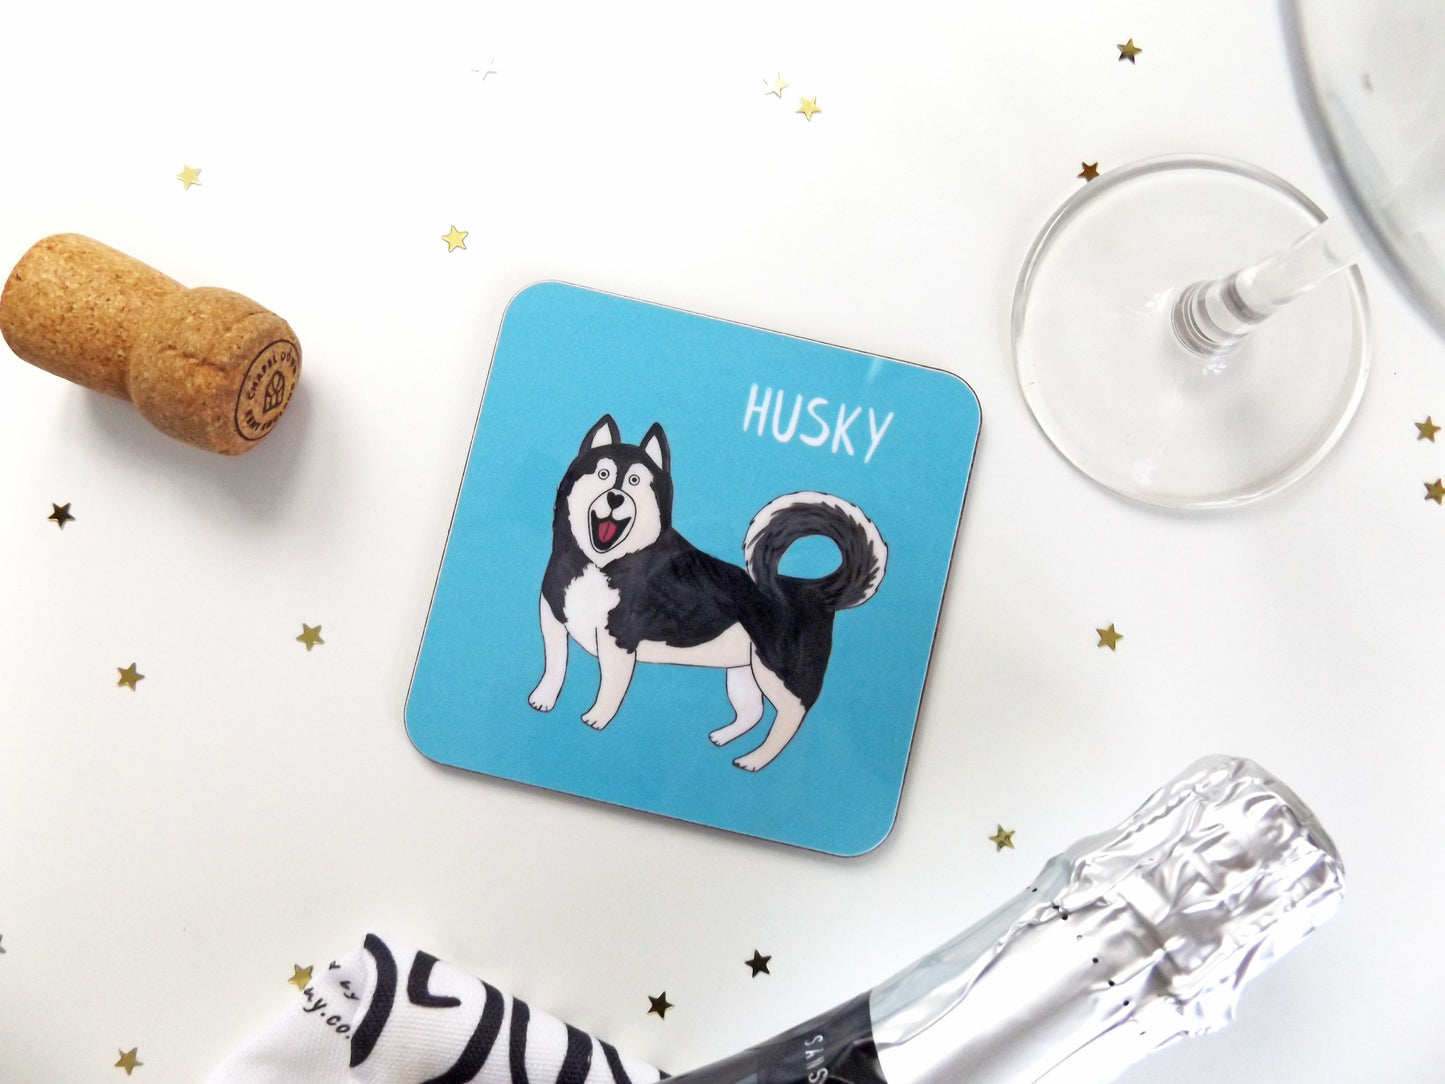 Illustrated Husky drinks coaster